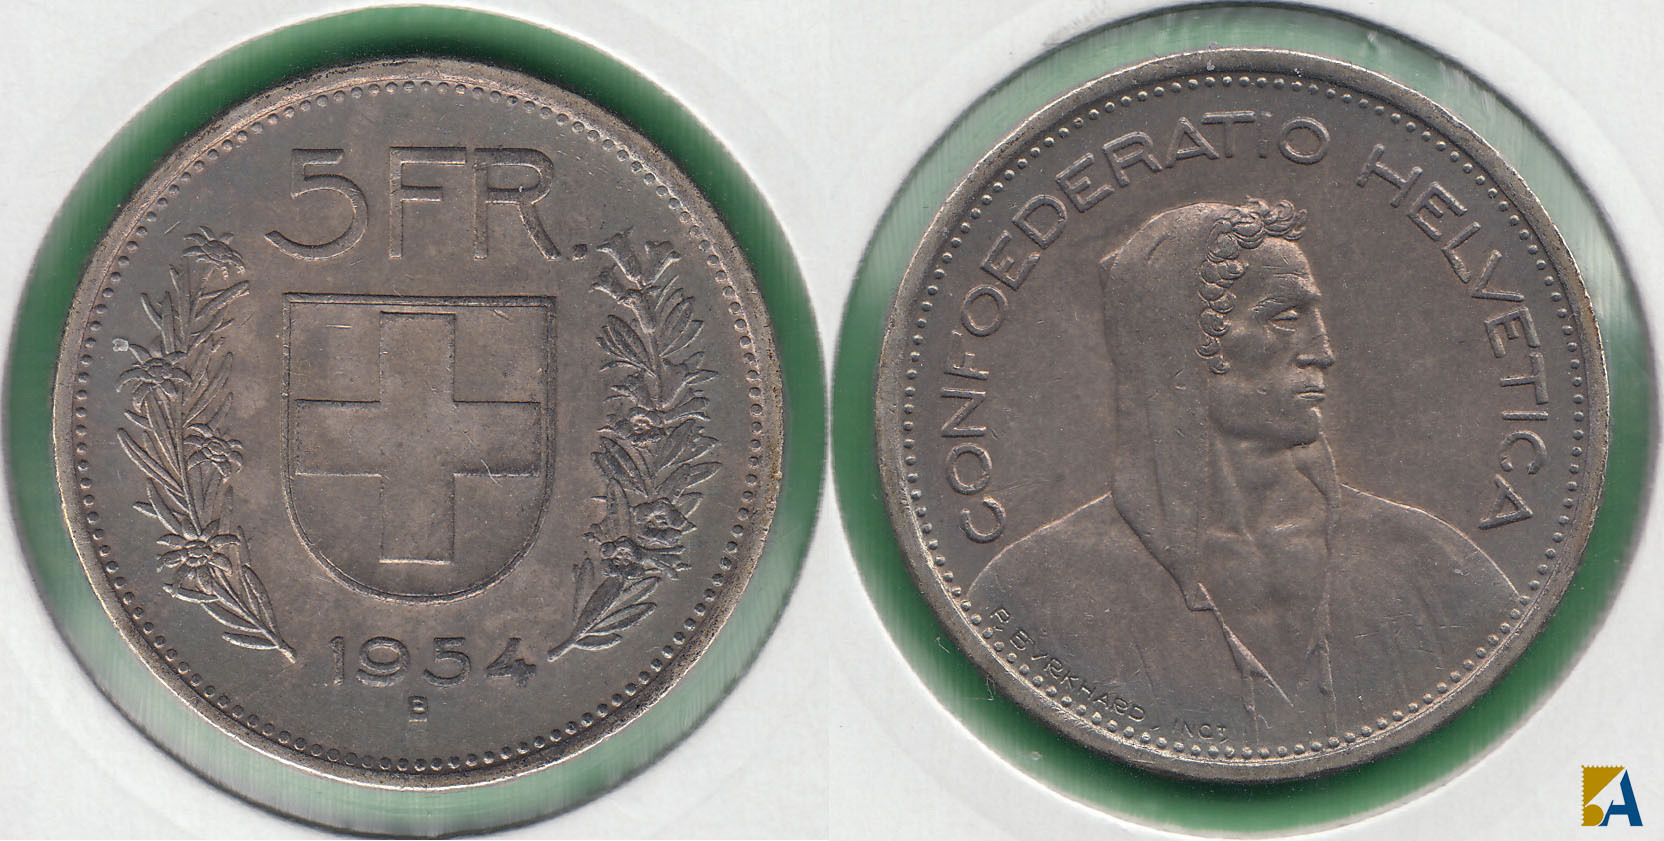 SUIZA - SWITZERLAND. 5 FRANCOS (FRANCS) DE 1954 B. PLATA 0.835. (2)